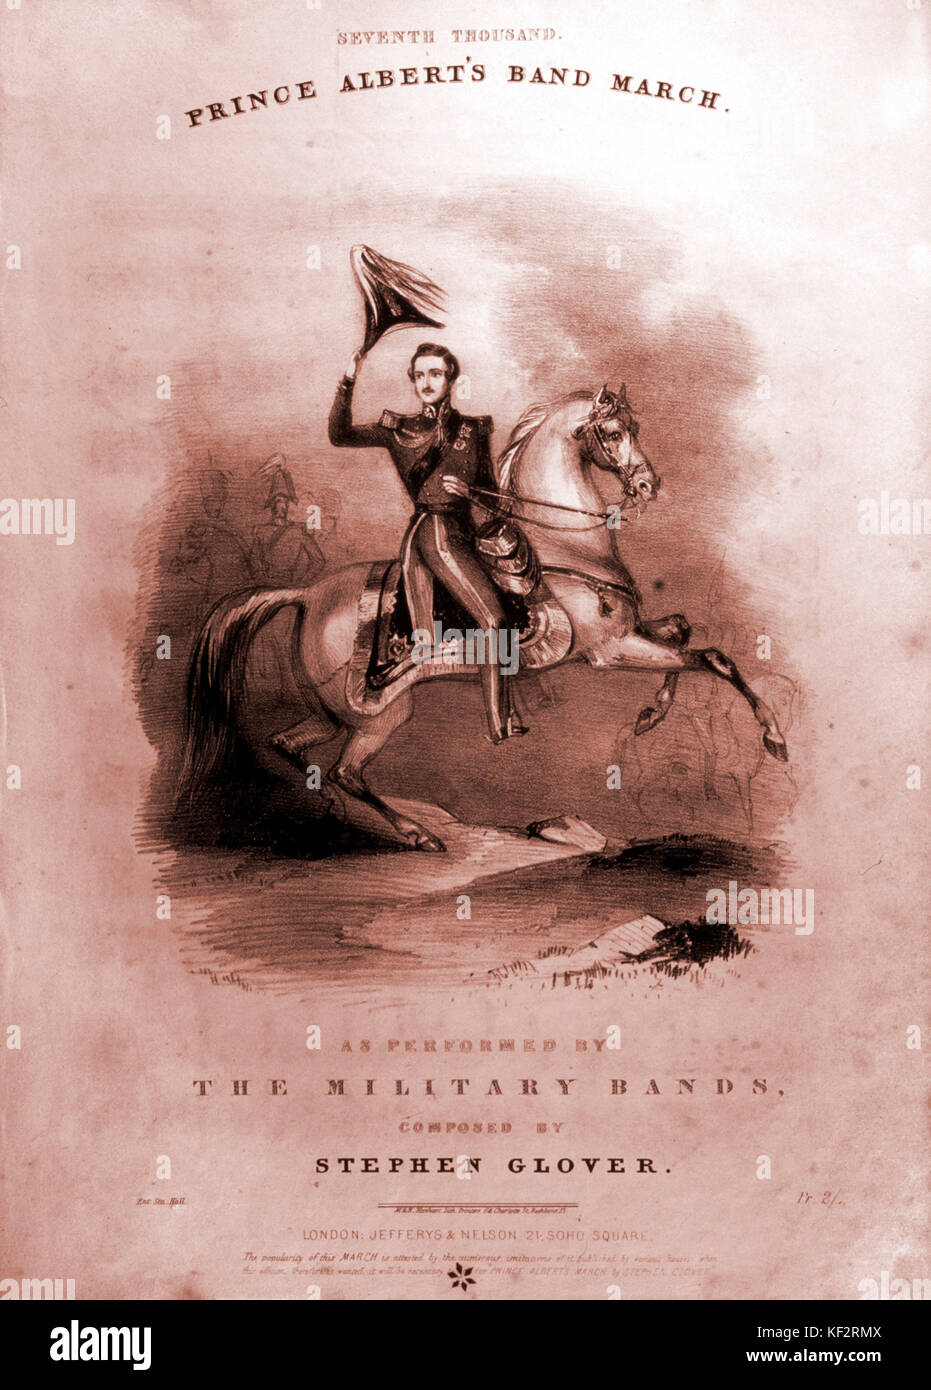 VICTORIA & ALBERT - Prince Albert's Band Score Mars couvrir montrant le Prince Albert équitation à cheval. Musique par Stephen Glover, c1840 Banque D'Images